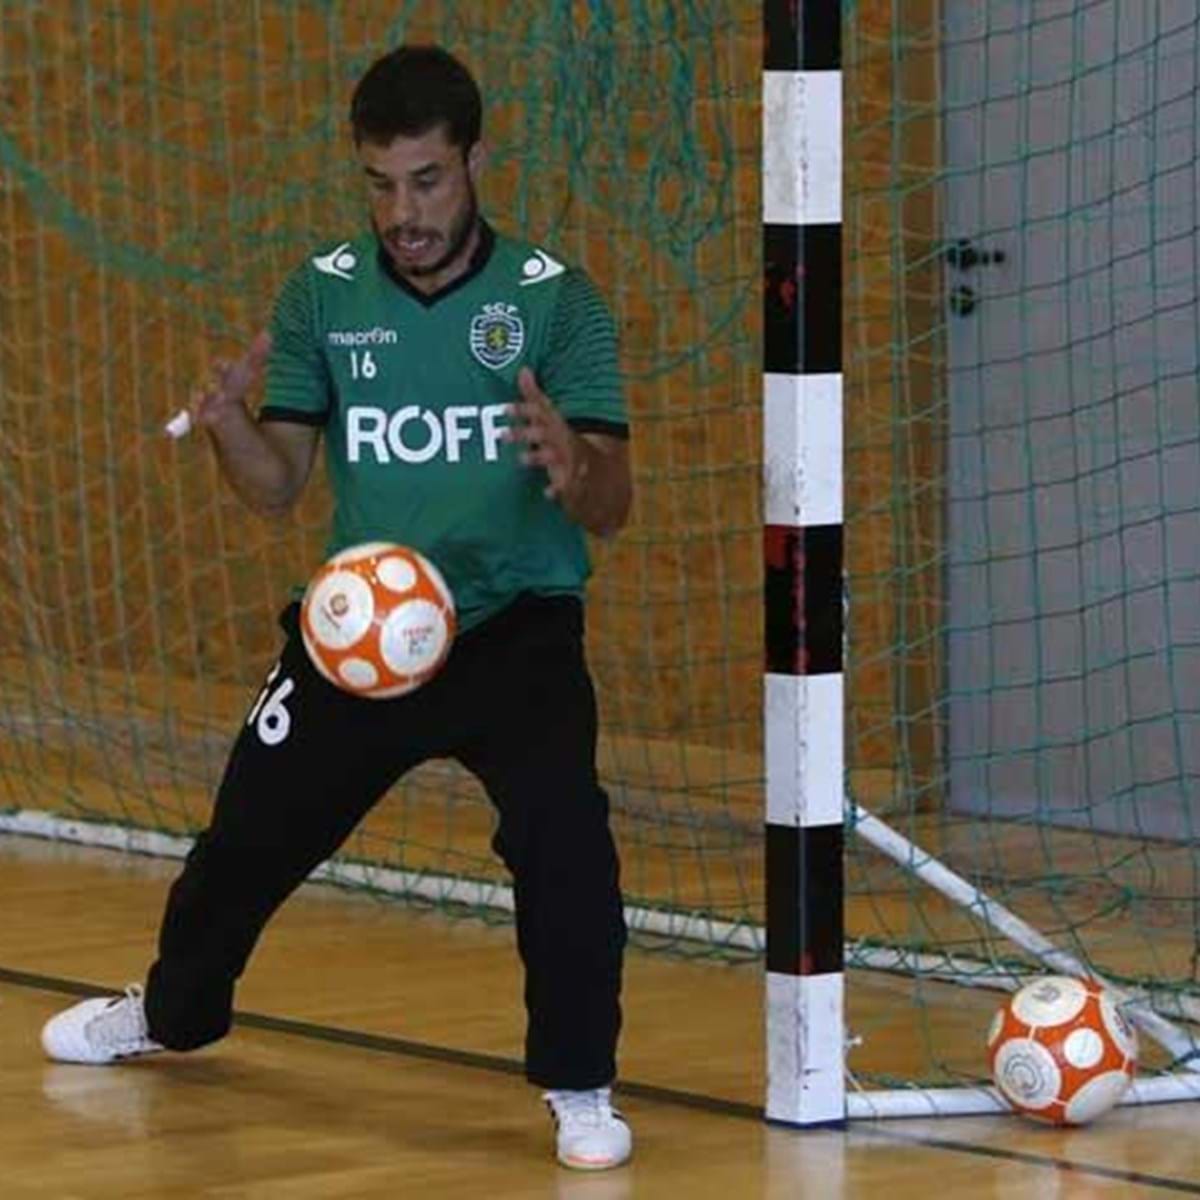 Benfica-Sporting, 1-4: Taynada servida de bandeja - Futsal